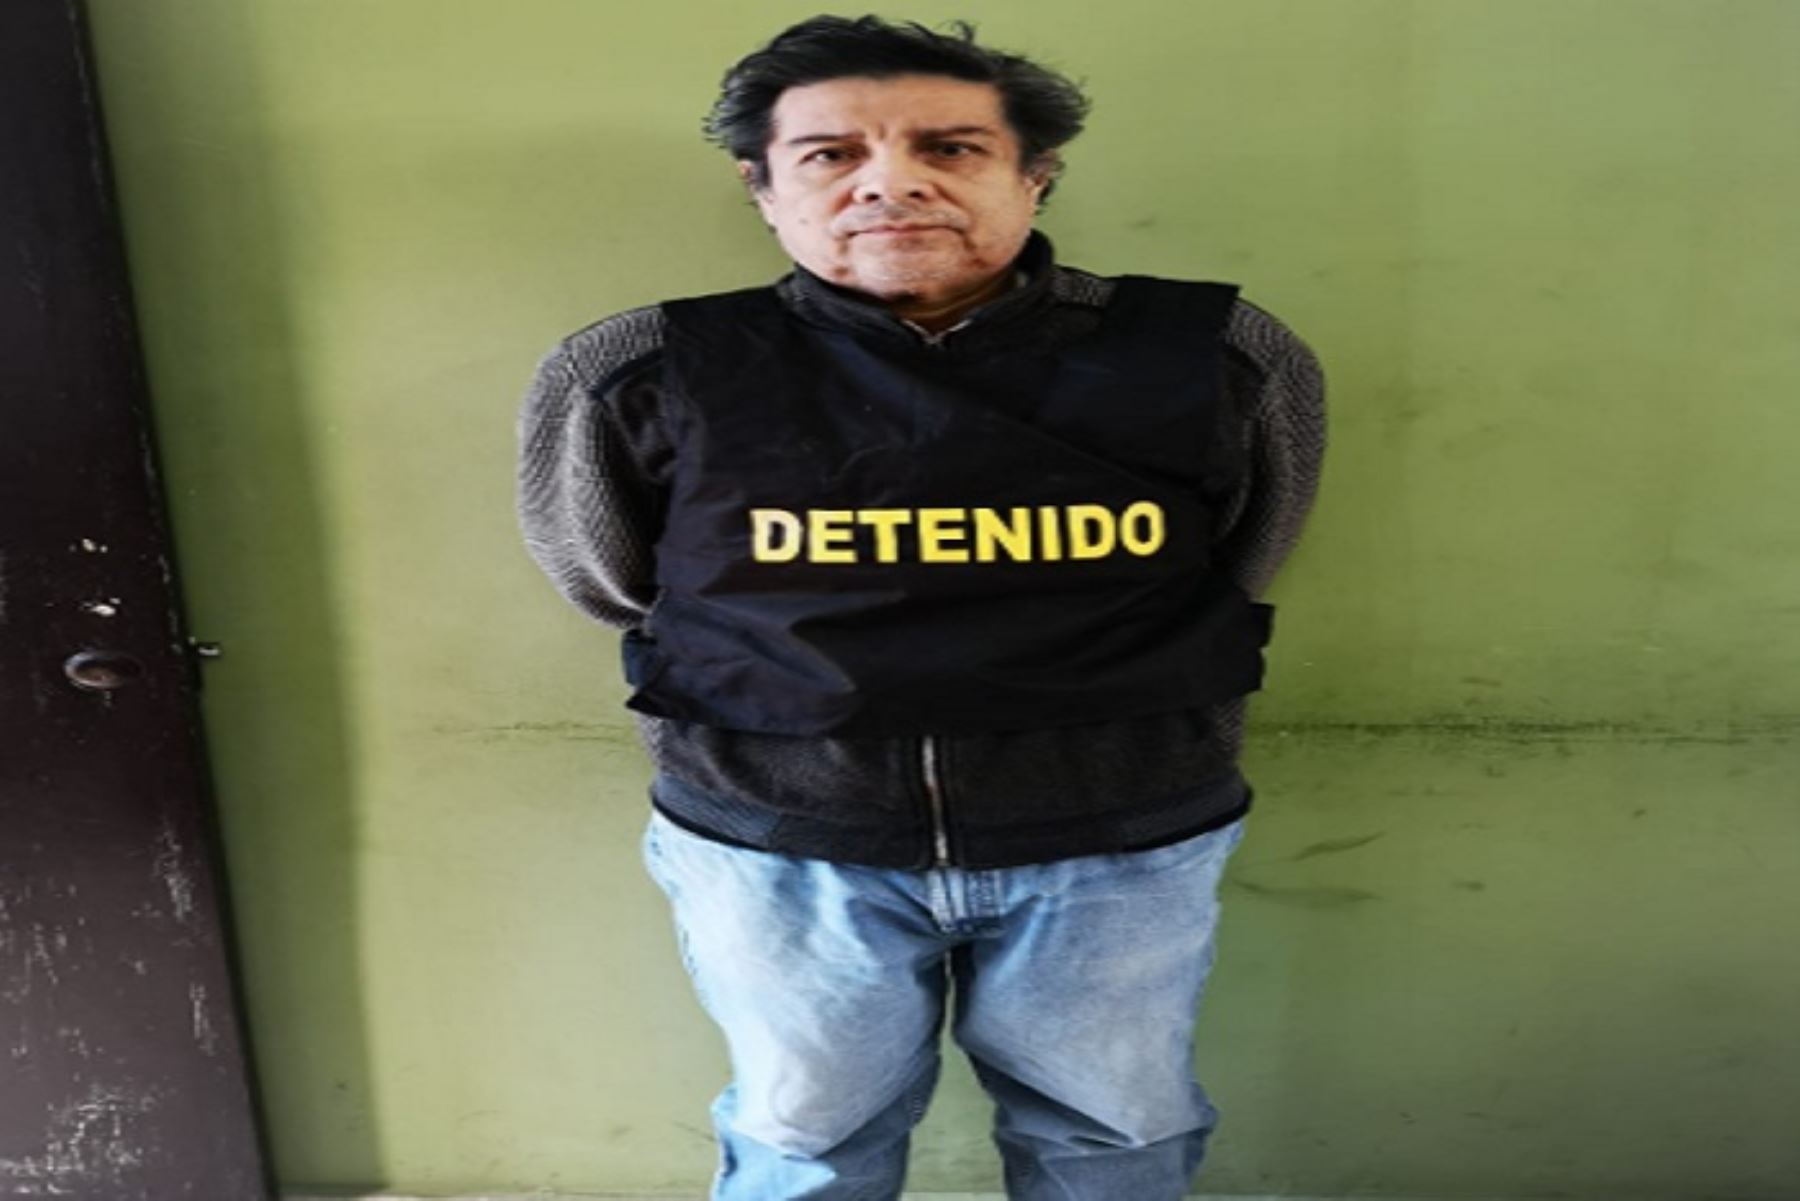 La Policía Nacional del Perú (PNP) capturó en Chimbote (región Áncash) al exgerente de Obras Públicas de la Municipalidad Provincial del Santa (MPS), Javier Menacho Méndez, prófugo de la justicia desde el 4 de julio del 2018, por una condena de 4 años de cárcel que pesa sobre él por el delito de colusión; se informó.